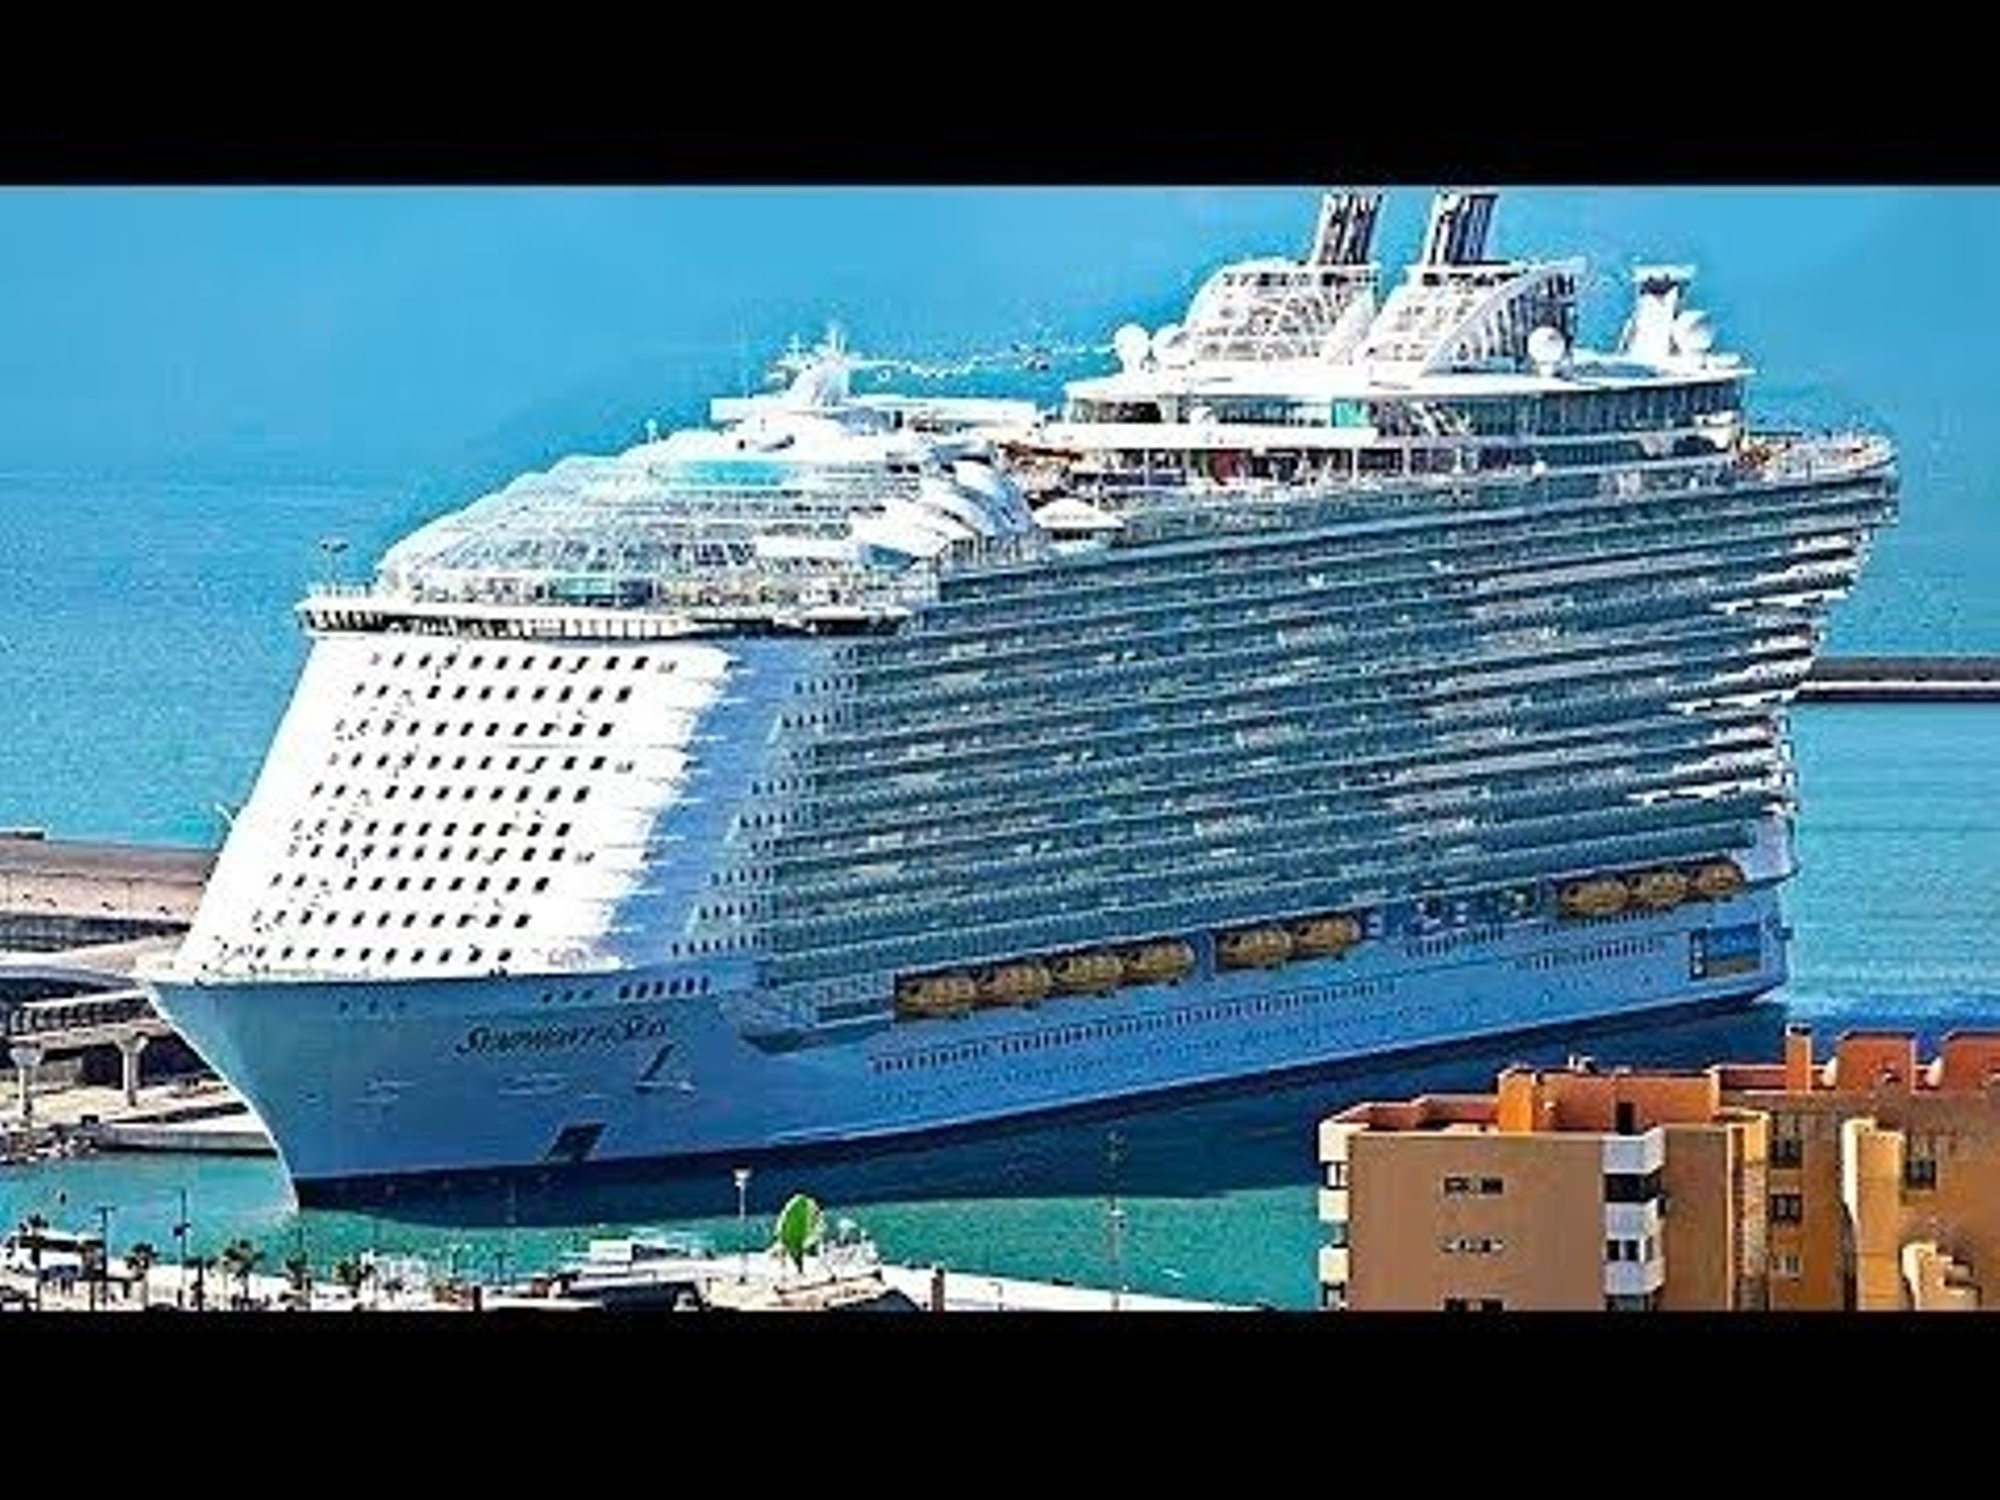 Есть корабль они живут в корабле. Оазис морей круизный лайнер. Самый большой пассажирский лайнер корабль в мире. Самый большой круизный лайнер в мире 2021. Капитан Оазис морей.